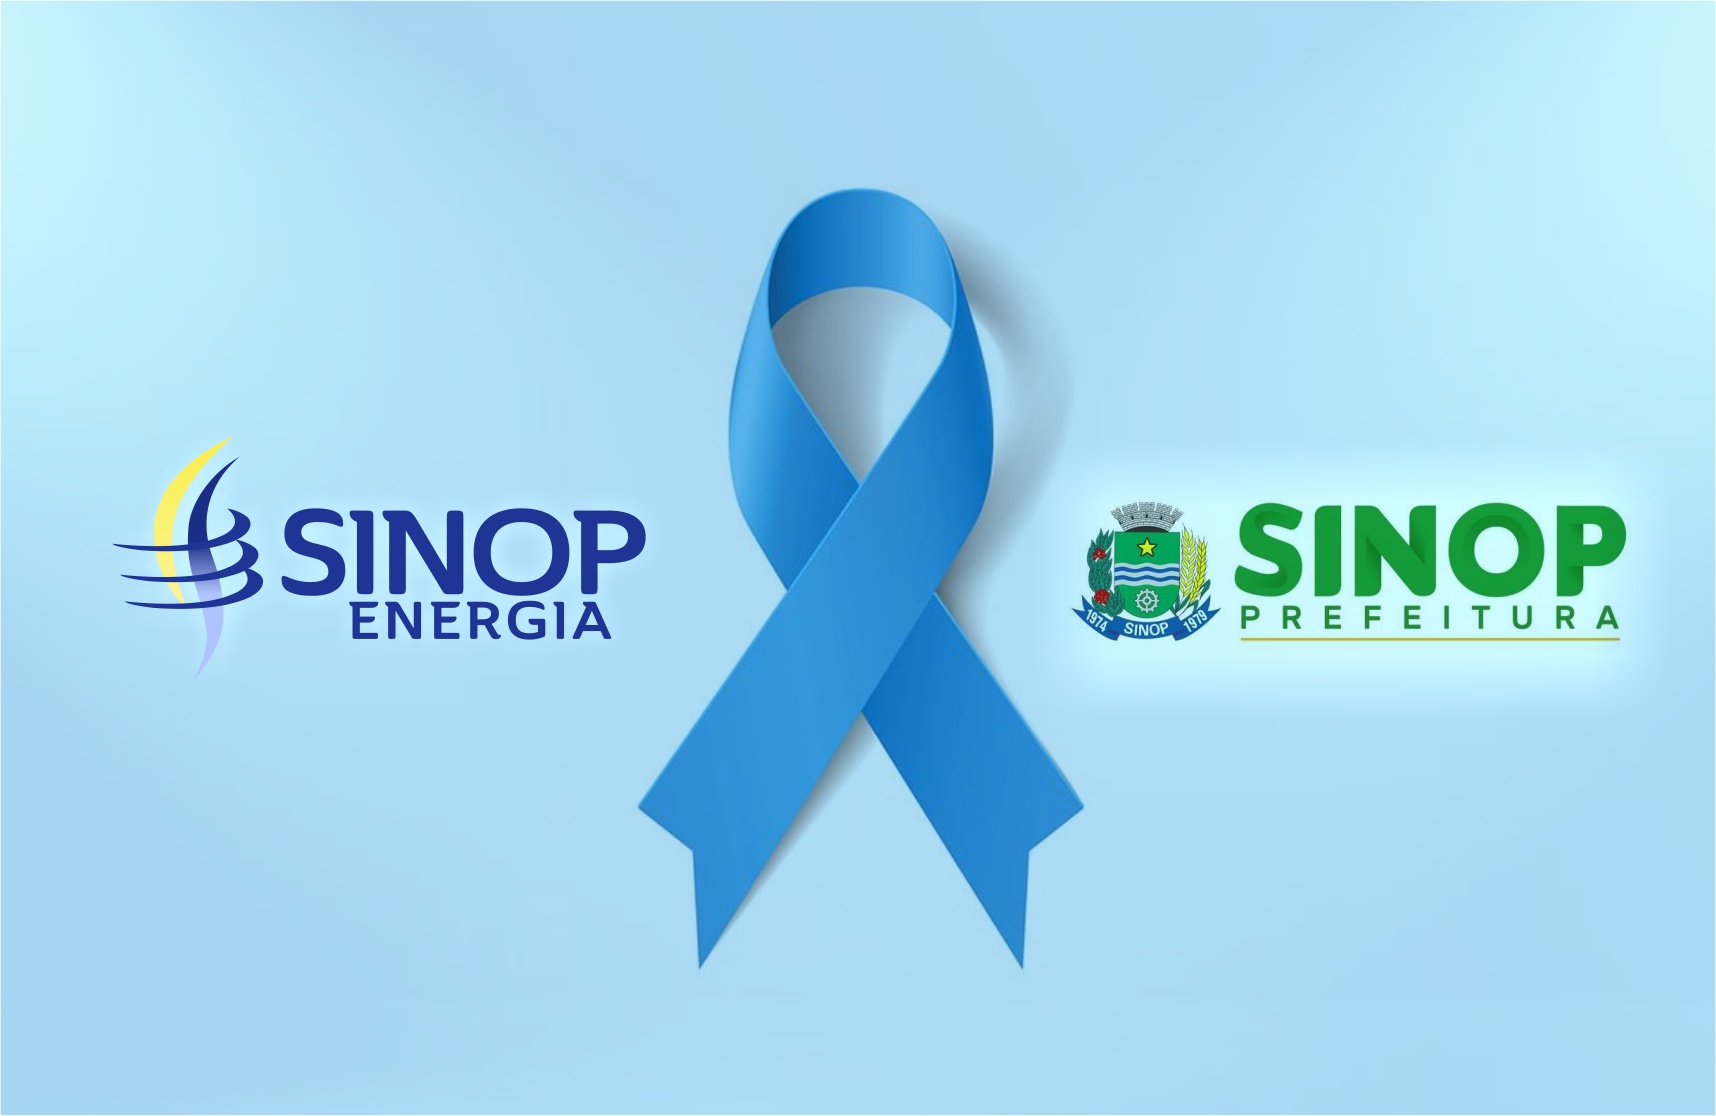 Sinop Energia e Prefeitura de Sinop se unem em prol do Novembro Azul